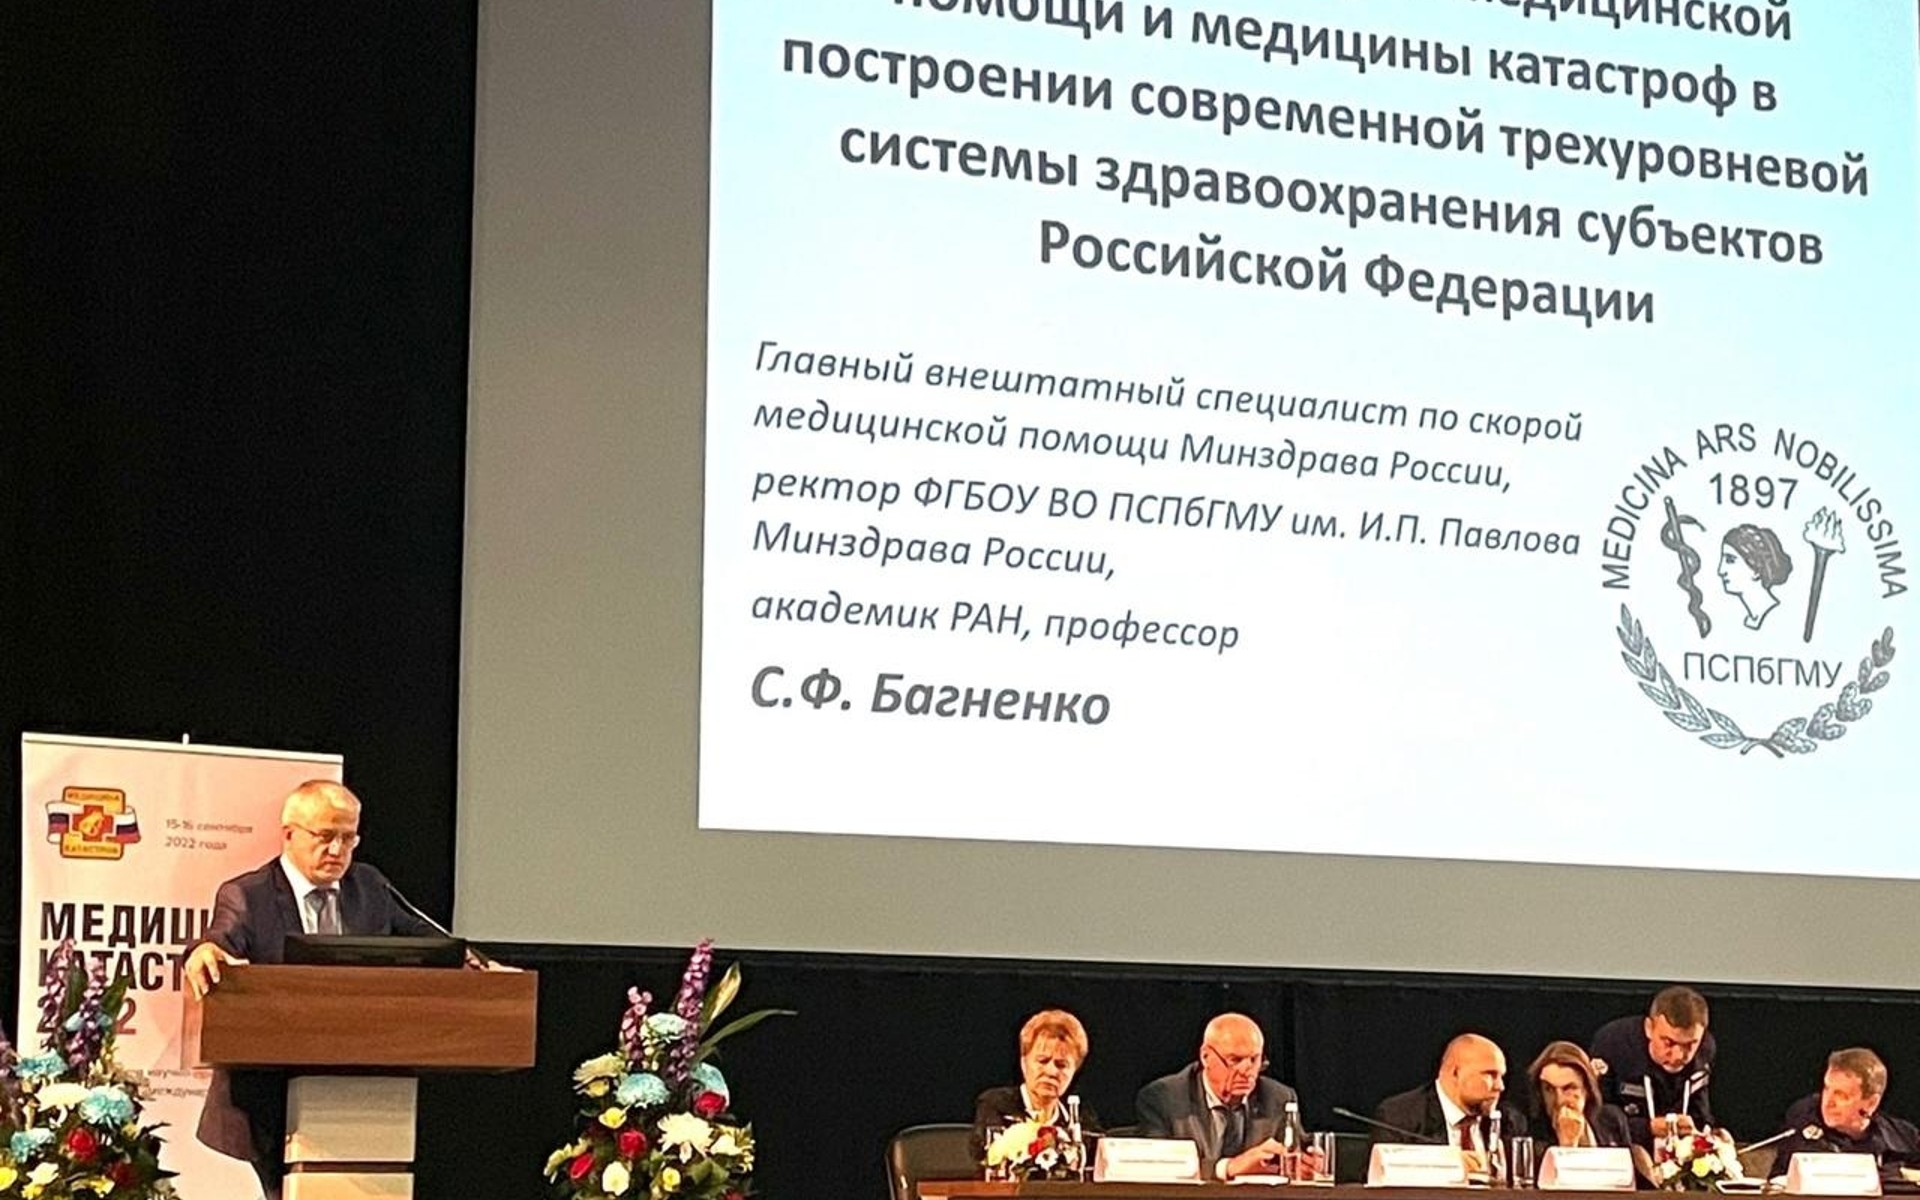 15-16 сентября 2022 г. в Москве состоялась Всероссийская научно-практическая конференция с международным участием «Медицина катастроф — 2022»